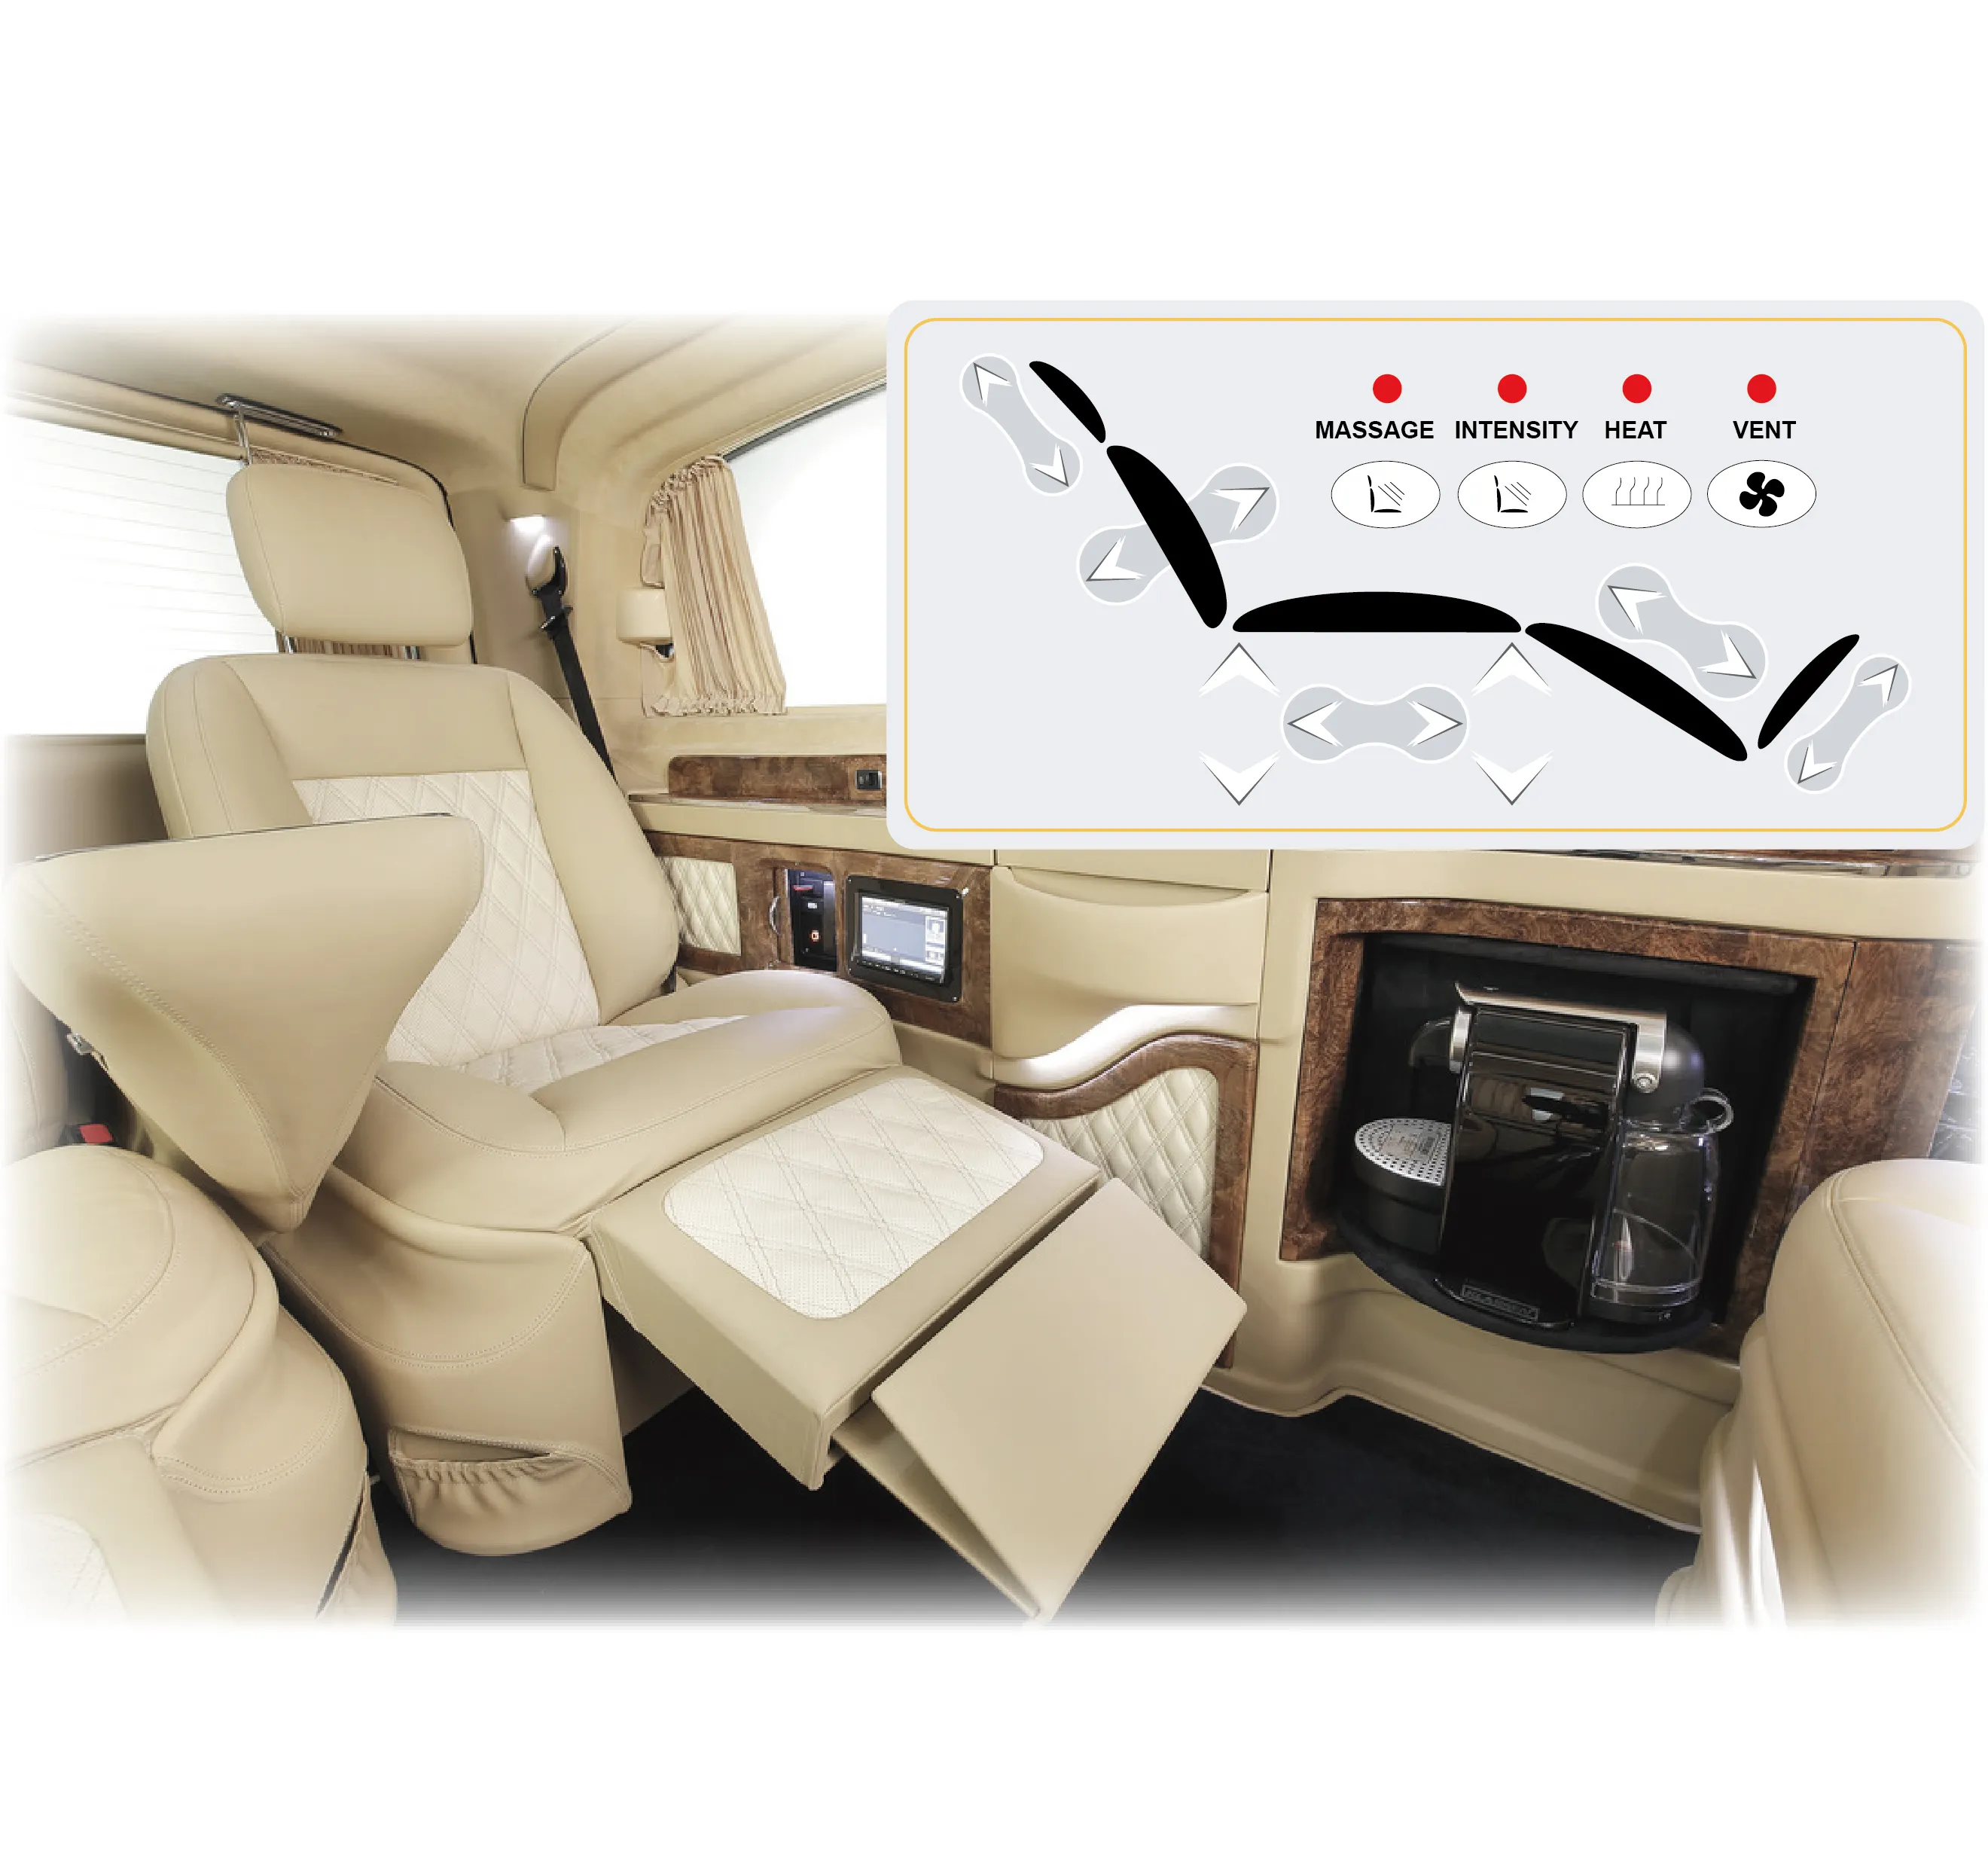 جهاز التحكم في المقعد, جهاز فاخر لضبط المقعد | مدلك | تدفئة | مروحة تبريد | جهاز تحكم ، تصميم نمطي داخل المقعد | للحافلات/MUV/MPV/السيارة